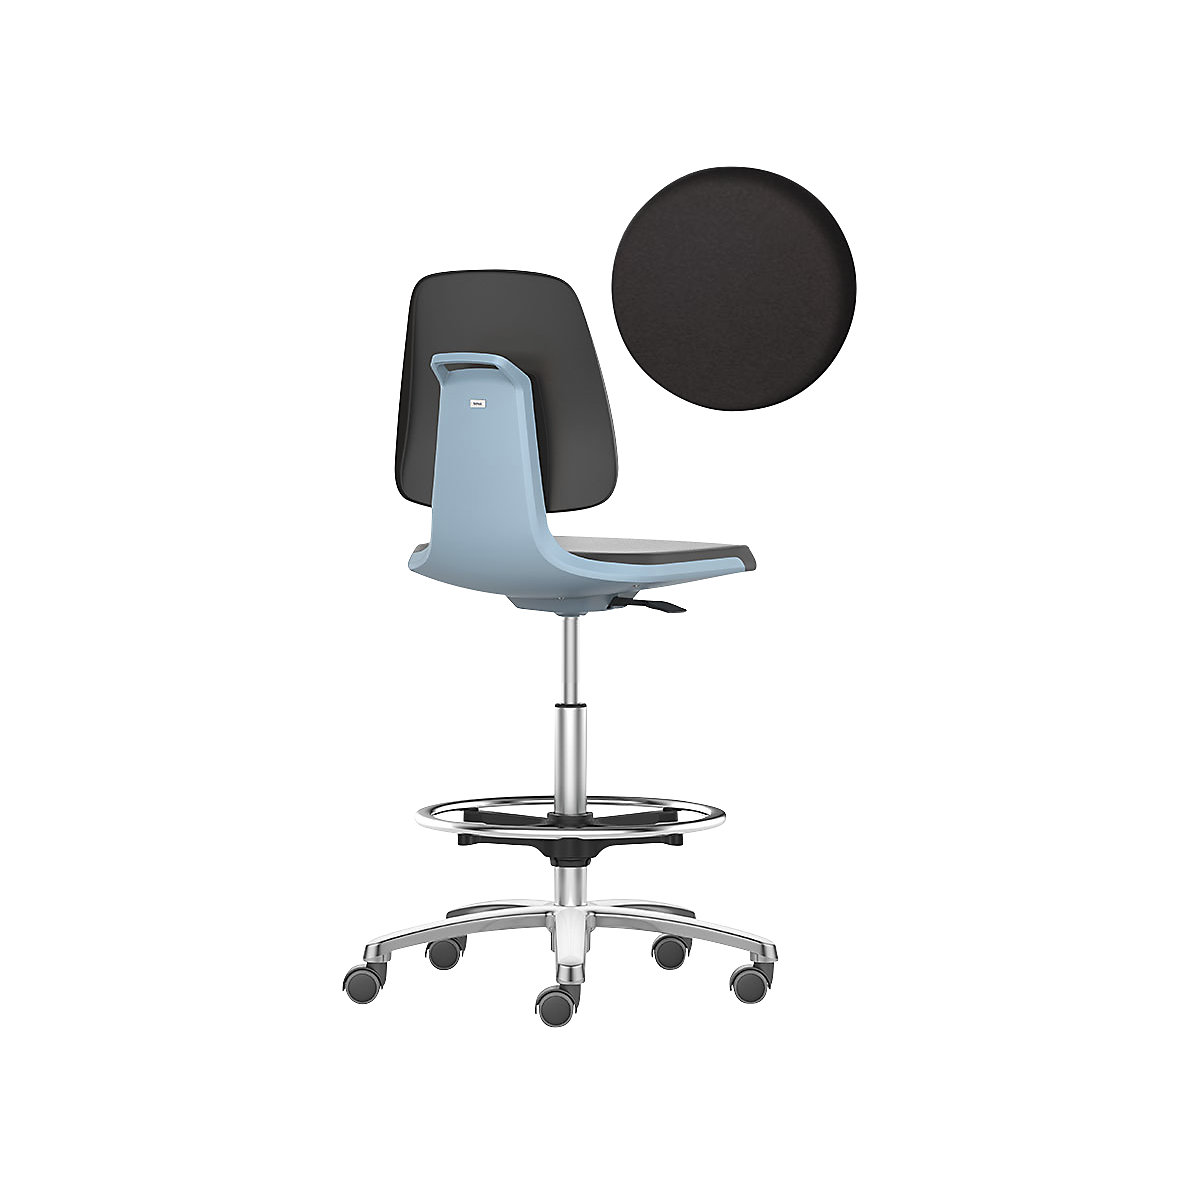 bimos – Siège d'atelier LABSIT, siège haut avec roulettes blocables et repose-pieds circulaire, assise en mousse PU, bleu